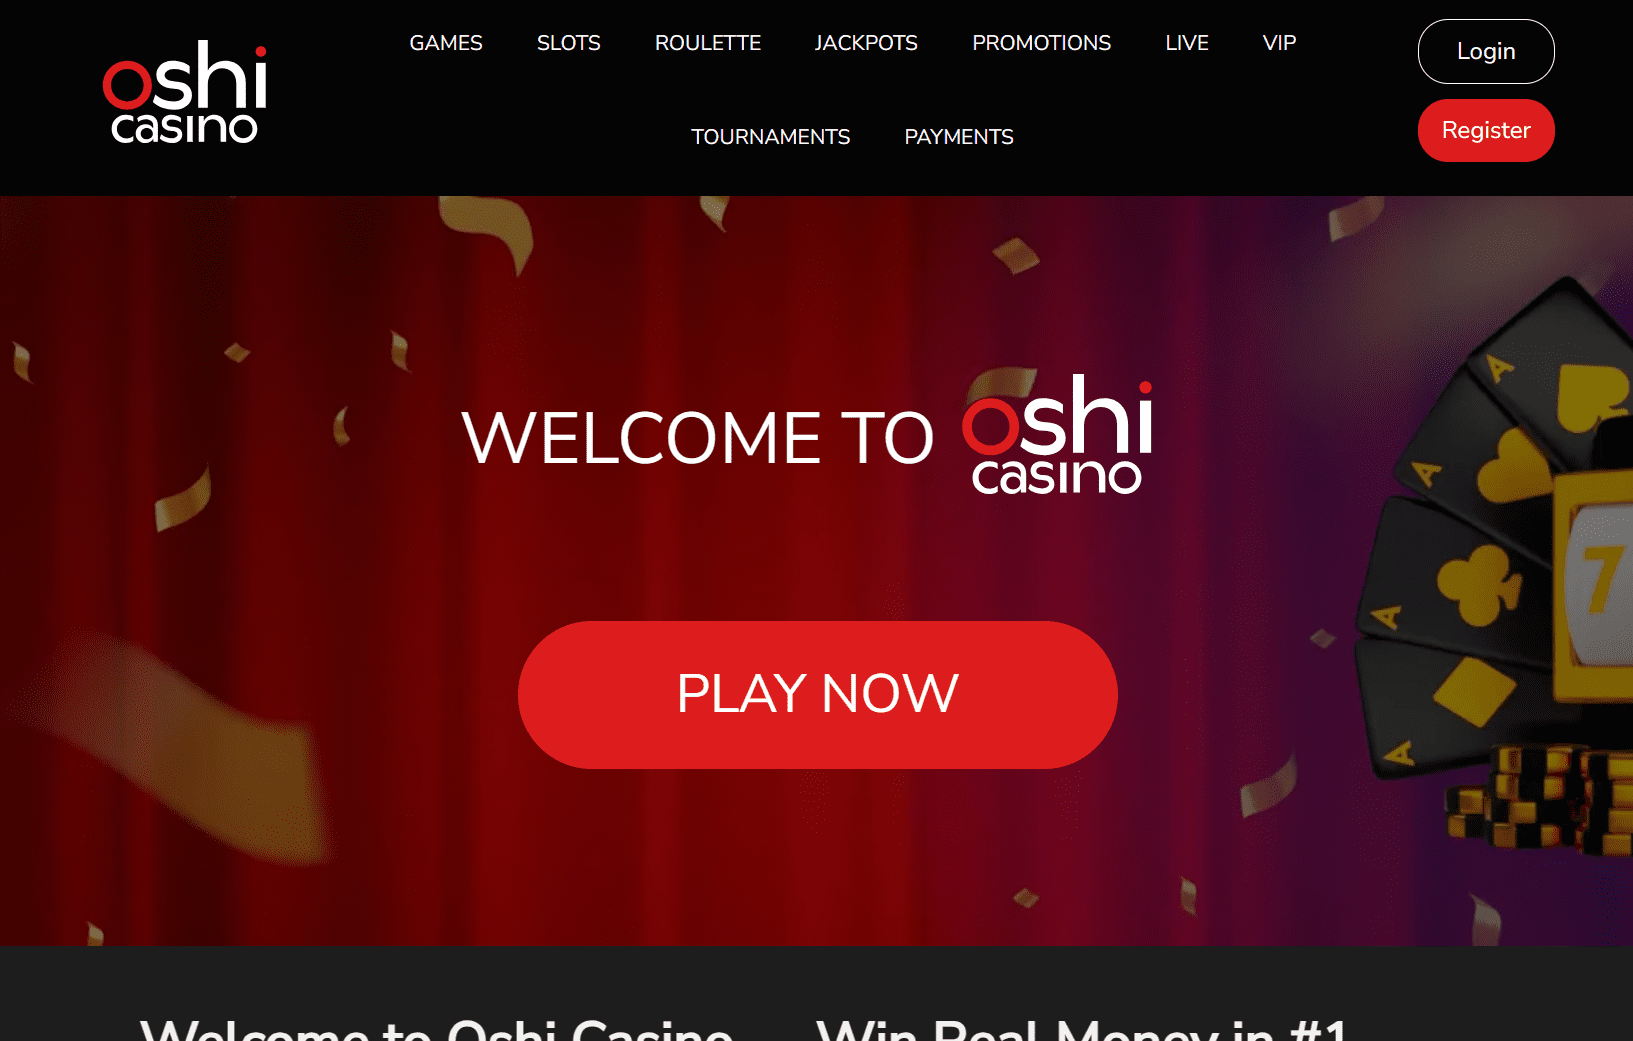 Screenshot of Oshi casino's landing page